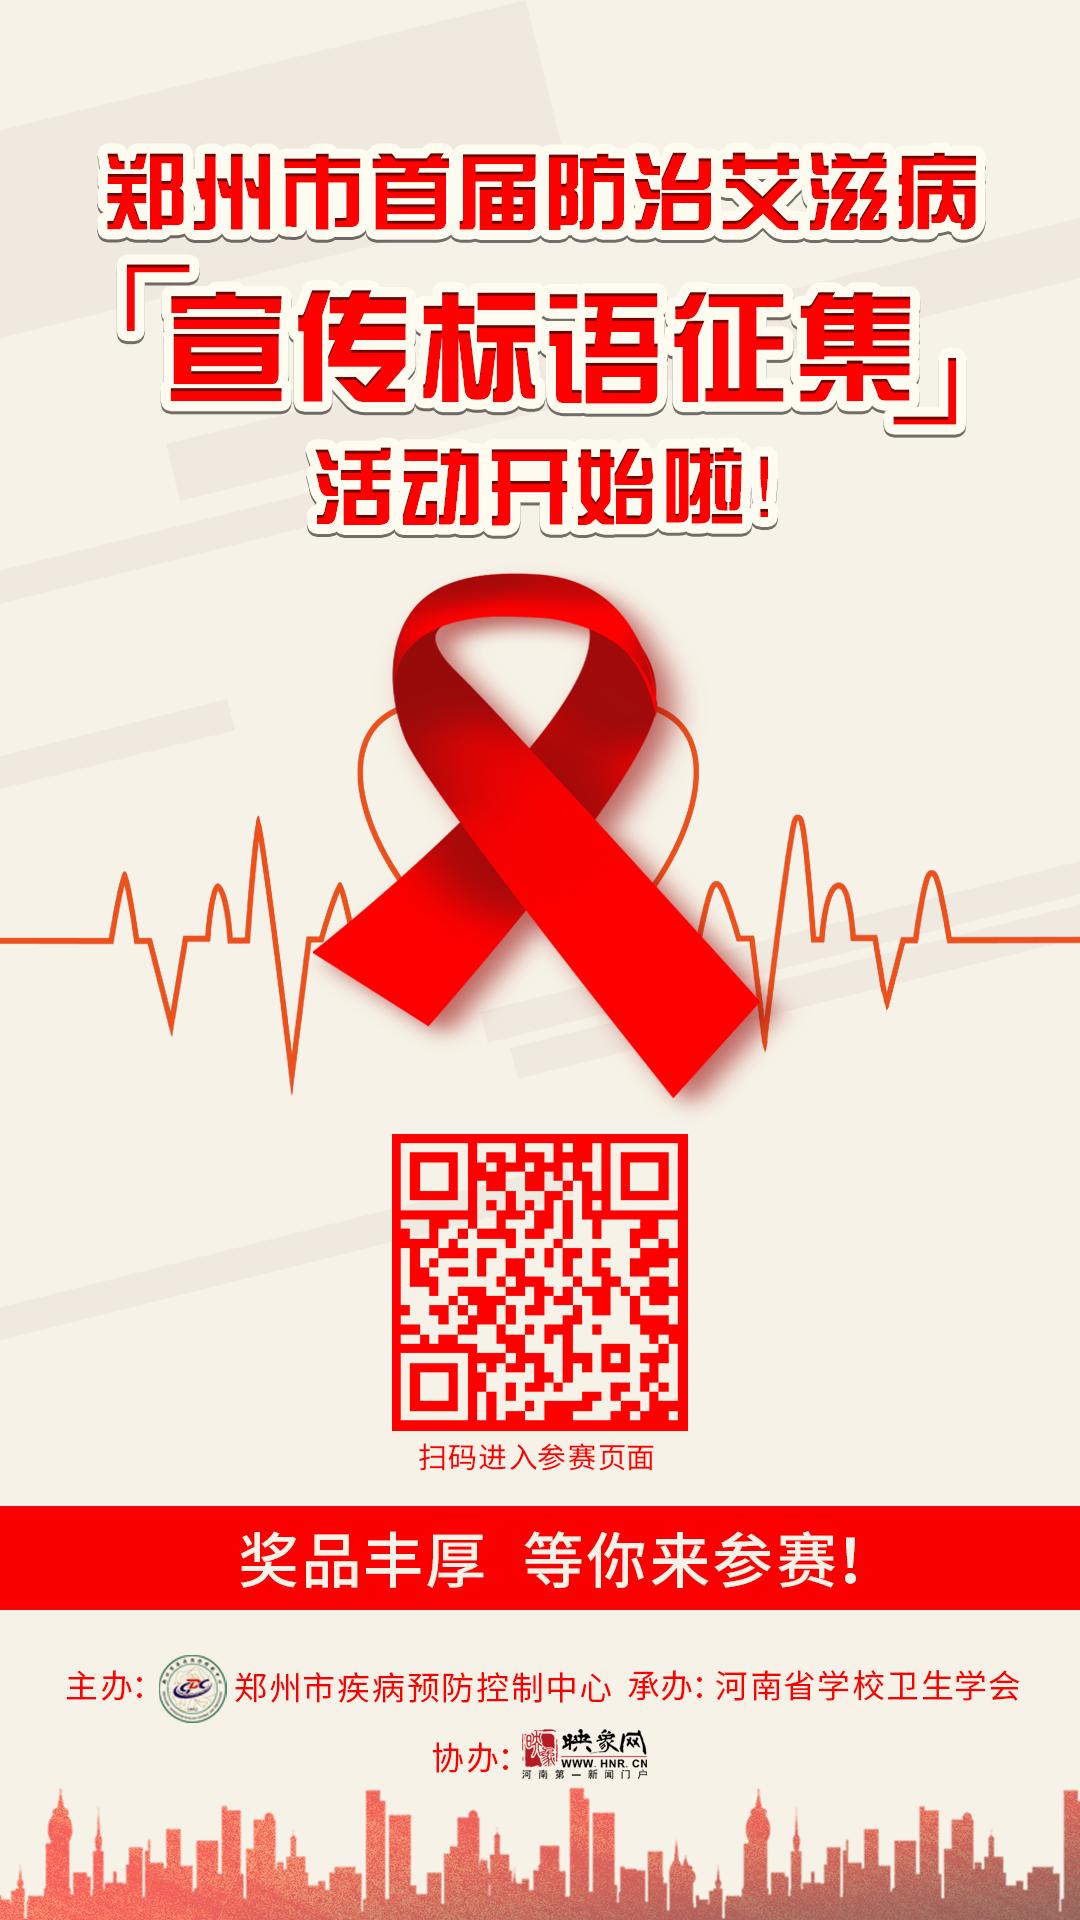 郑州市首届防治艾滋病宣传标语设计征集活动开始啦 